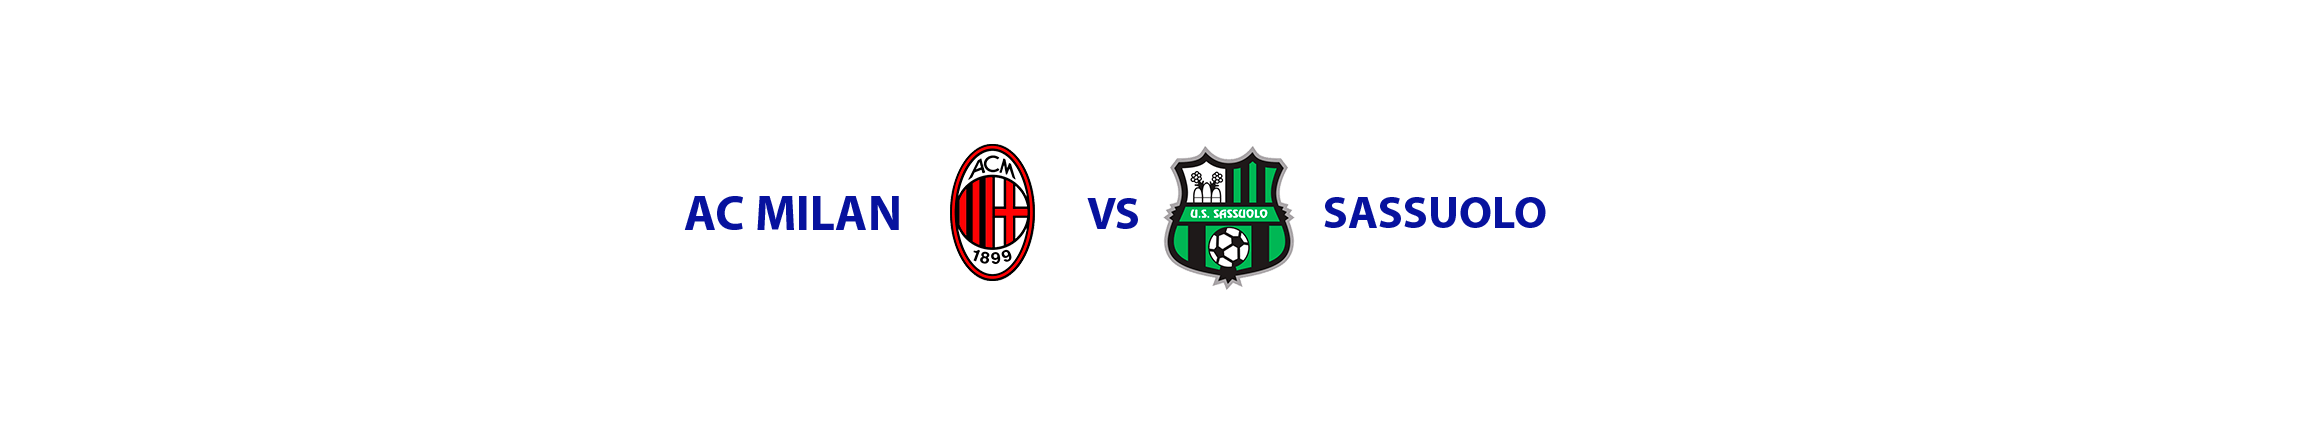 ac-milan-sassuolo-tickets-san-siro-stadium-milan